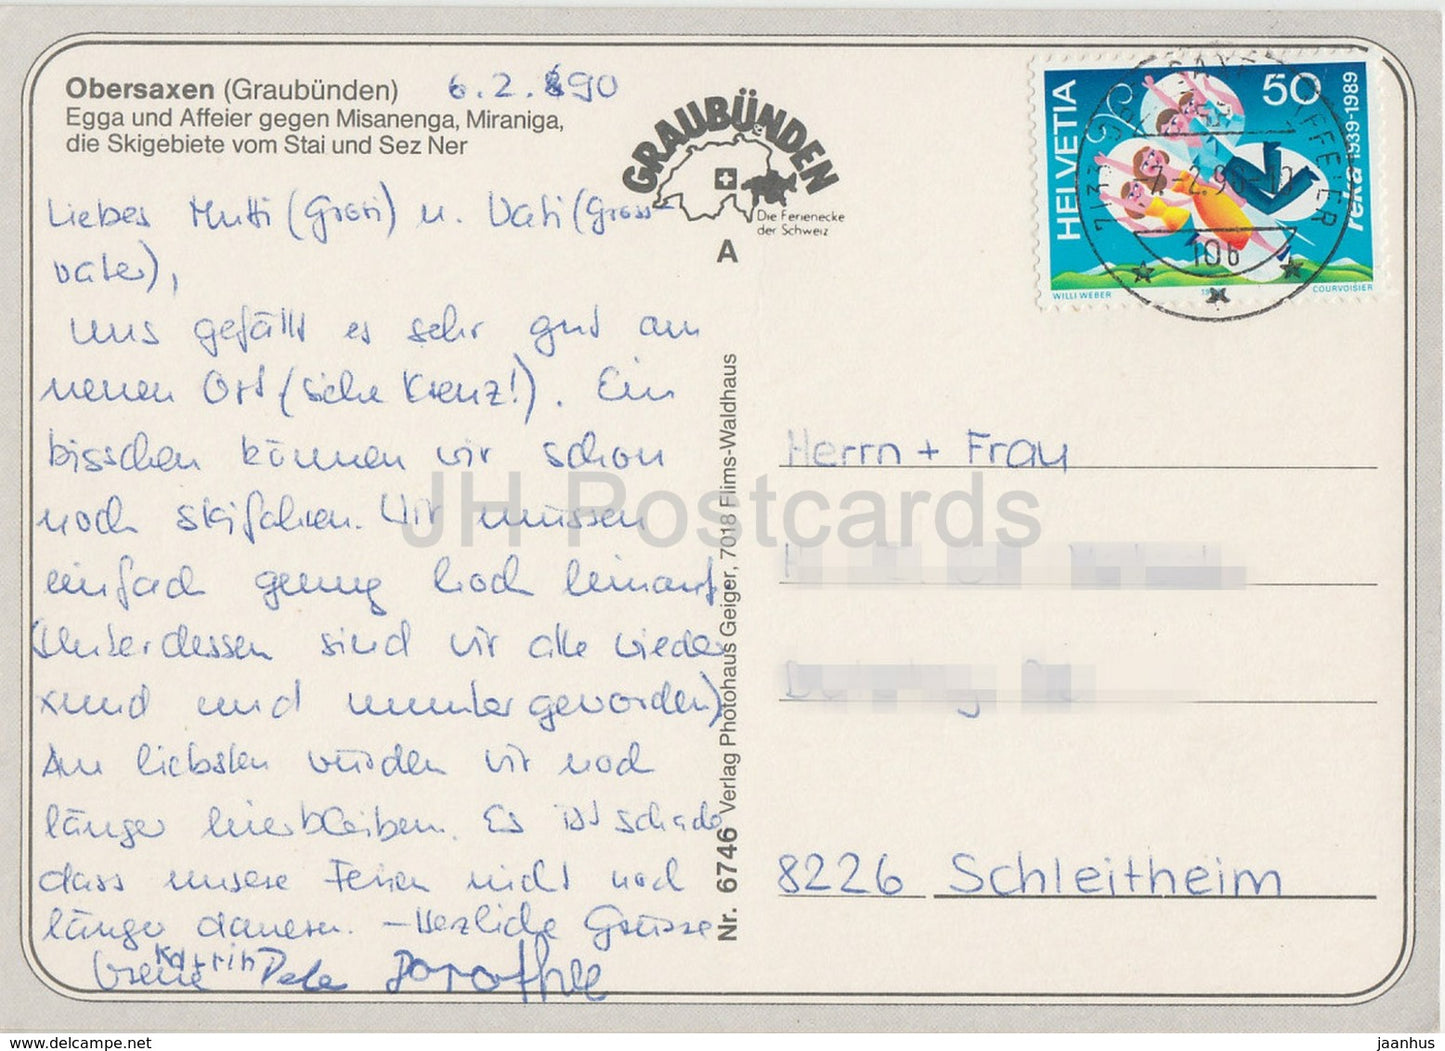 Obersaxen - Graubünden - Affeier - Egga - Misanenga - Miranga - 1990 - Schweiz - gebraucht